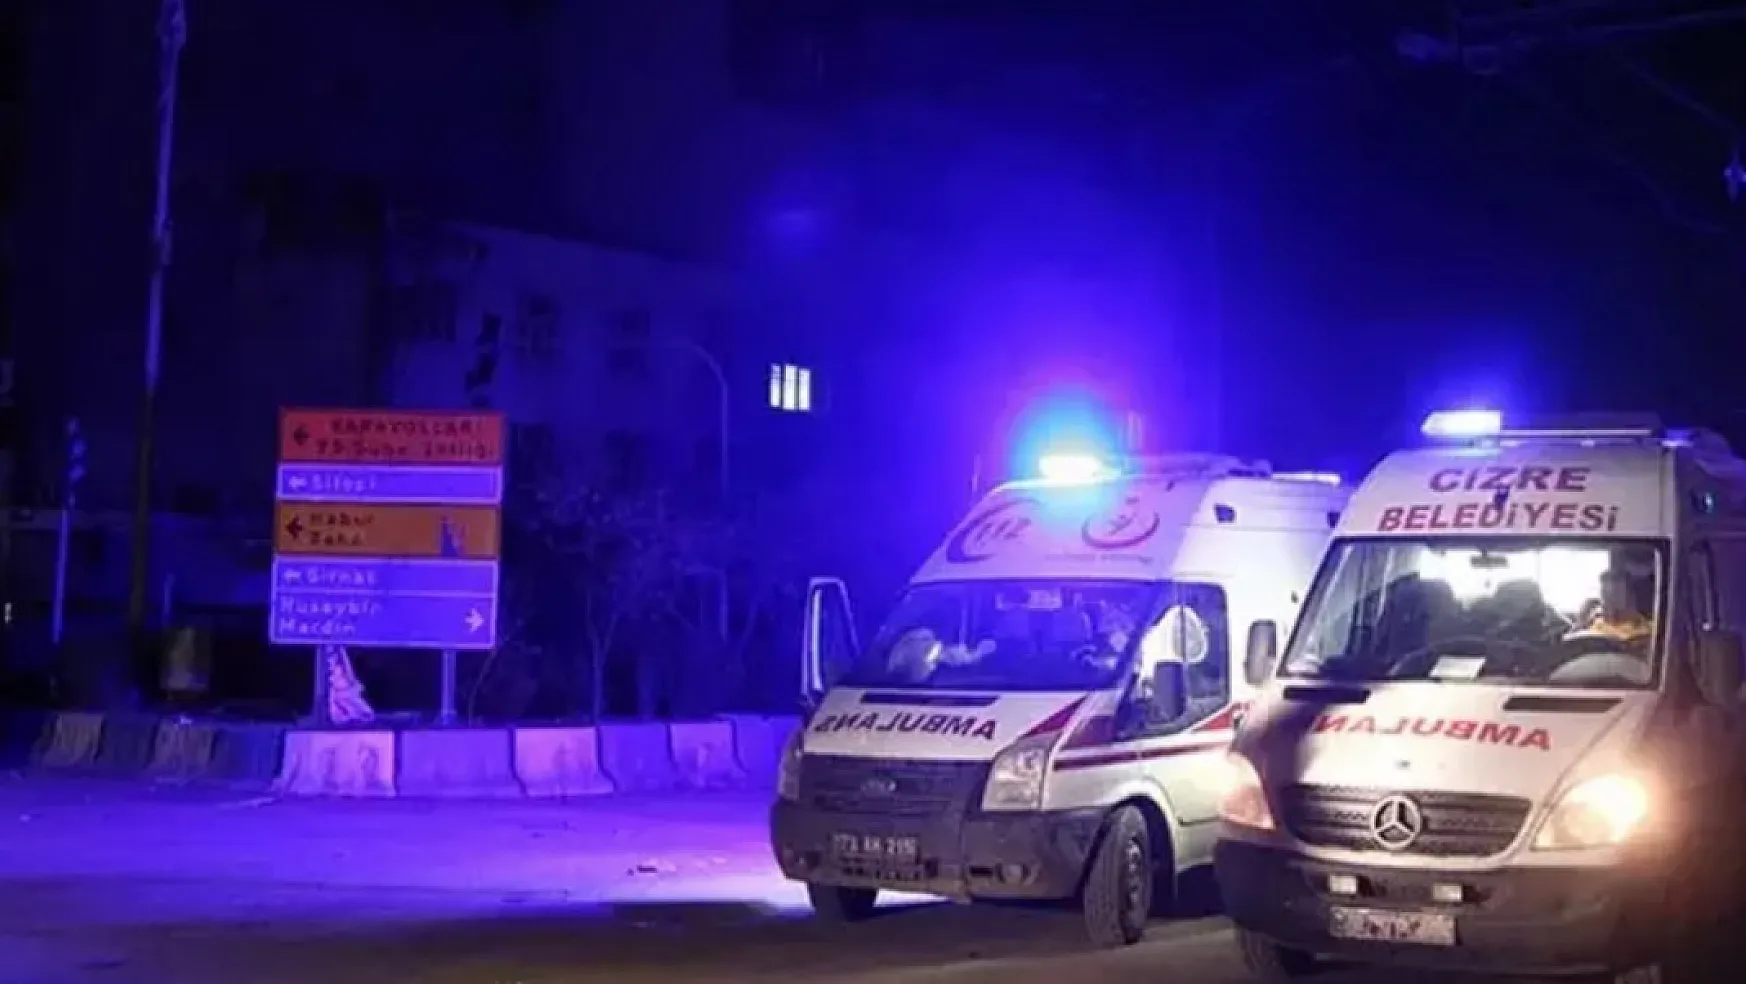 Cizre'deki Hastaneye Çok Sayıda Ambulans Girdiği İddiası